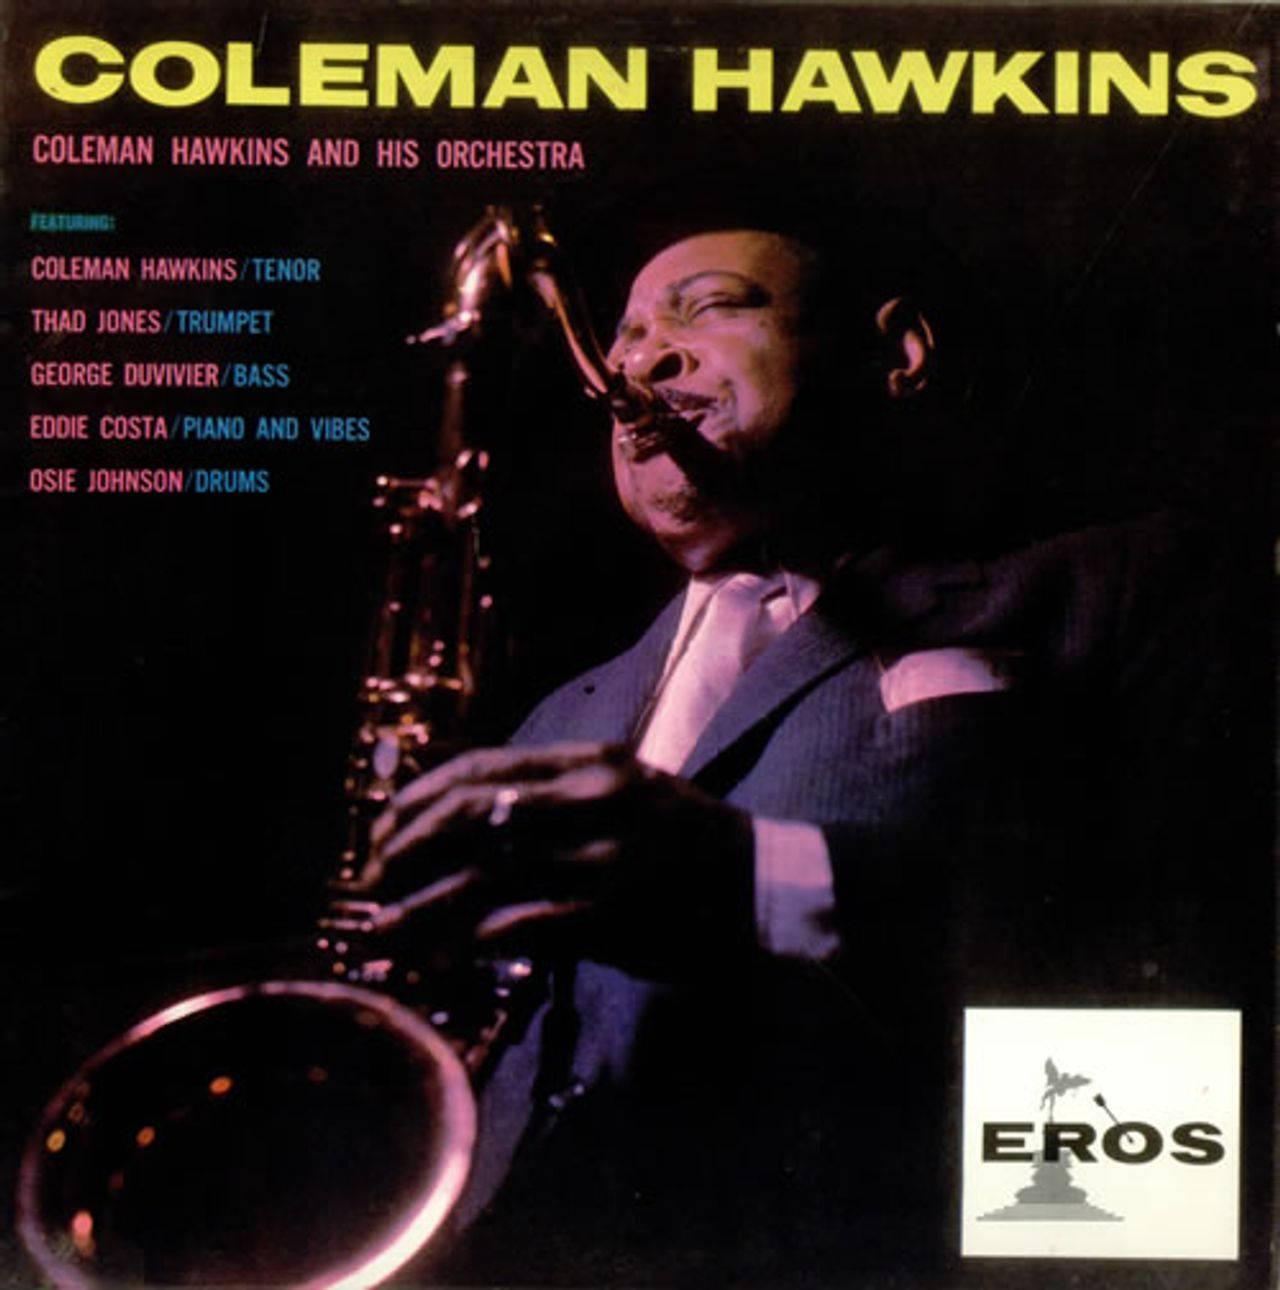 Coleman Hawkins&His Orchestra Album Cover Wallpaper